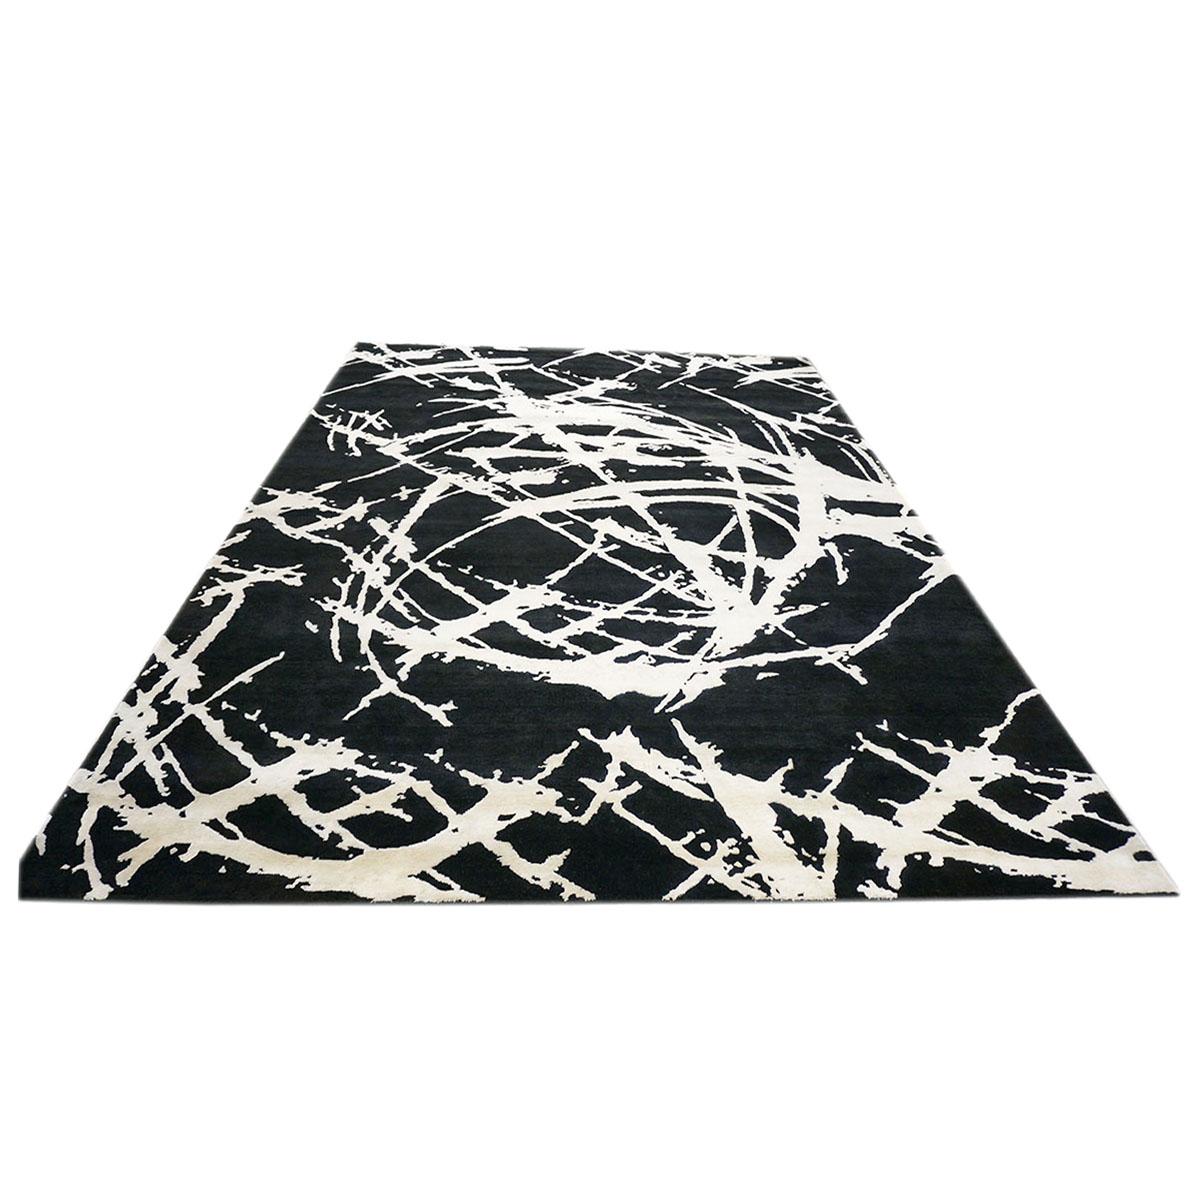 Ashly fine rugs präsentiert einen neuen, modern inspirierten 9x12 schwarz-weißen handgefertigten Teppich aus Wolle und Seide mit glänzenden Fasern und einem dicken, strapazierfähigen Flor. Diese wunderschöne Kollektion wurde von unserem hauseigenen